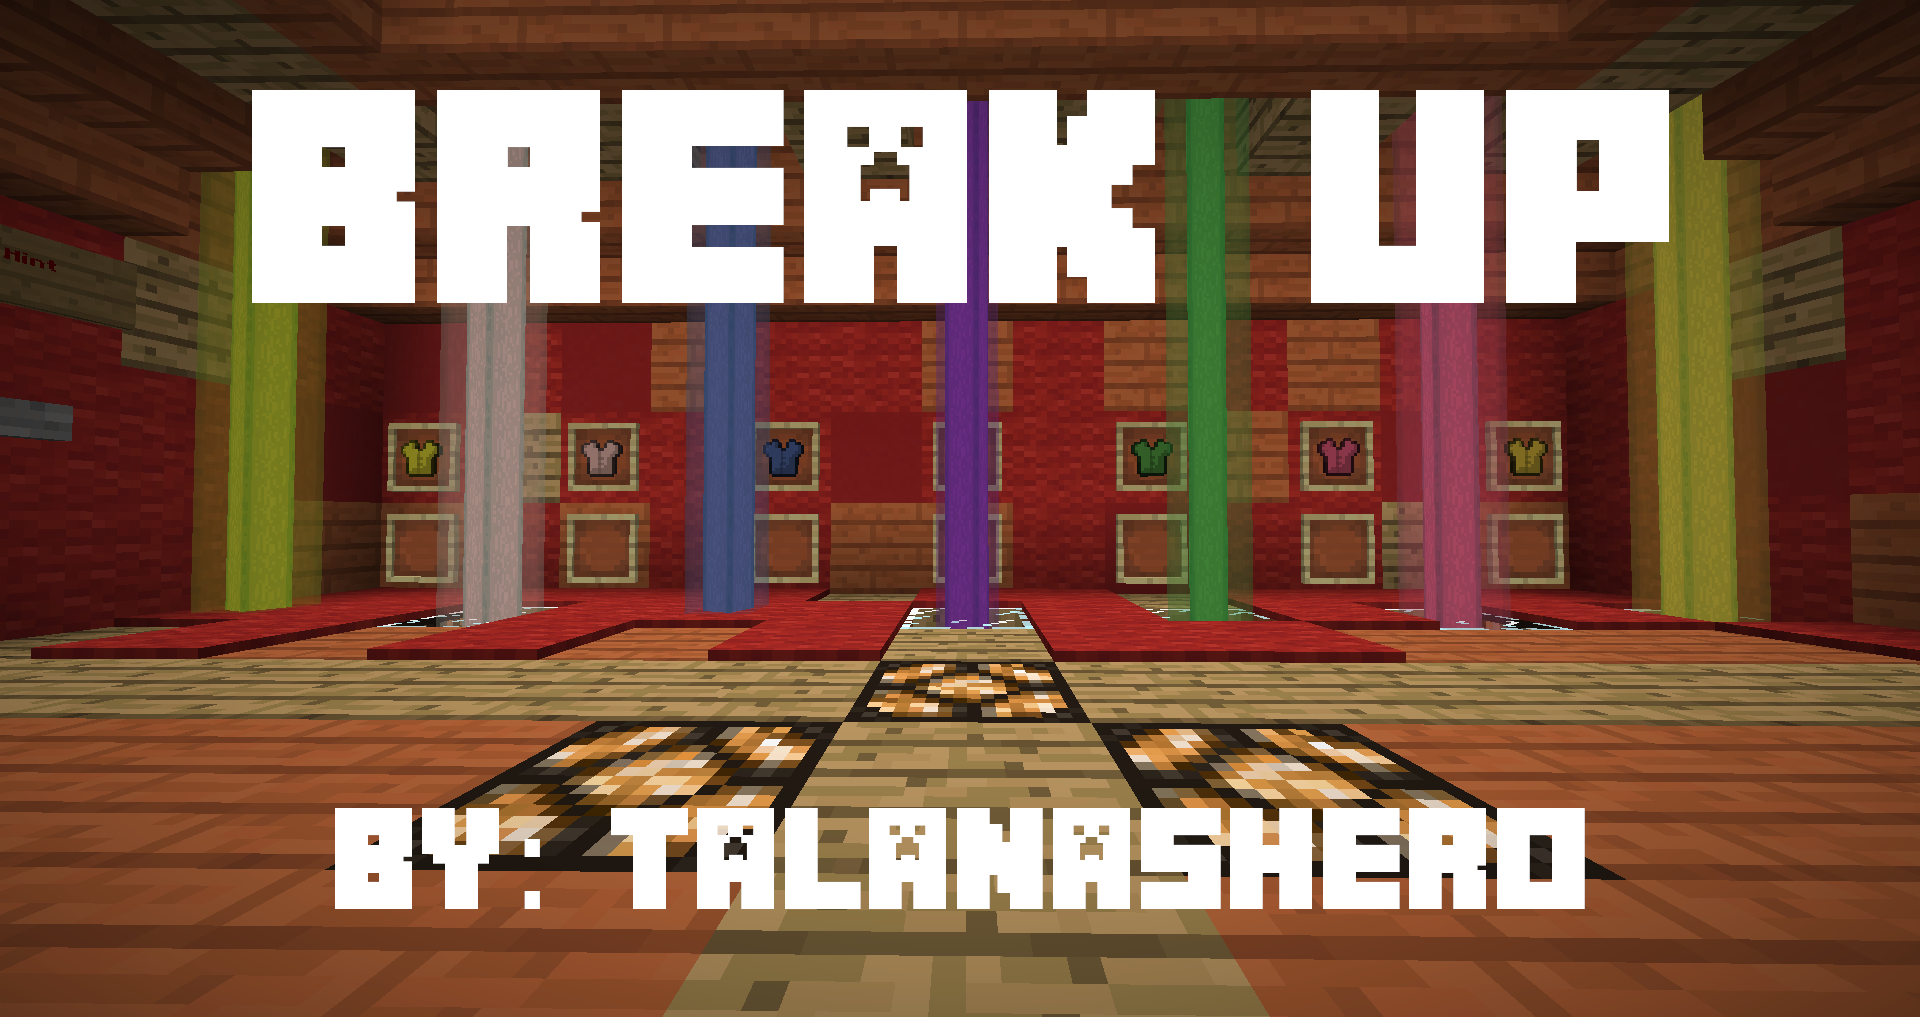 Скачать Break Up! для Minecraft 1.13.2